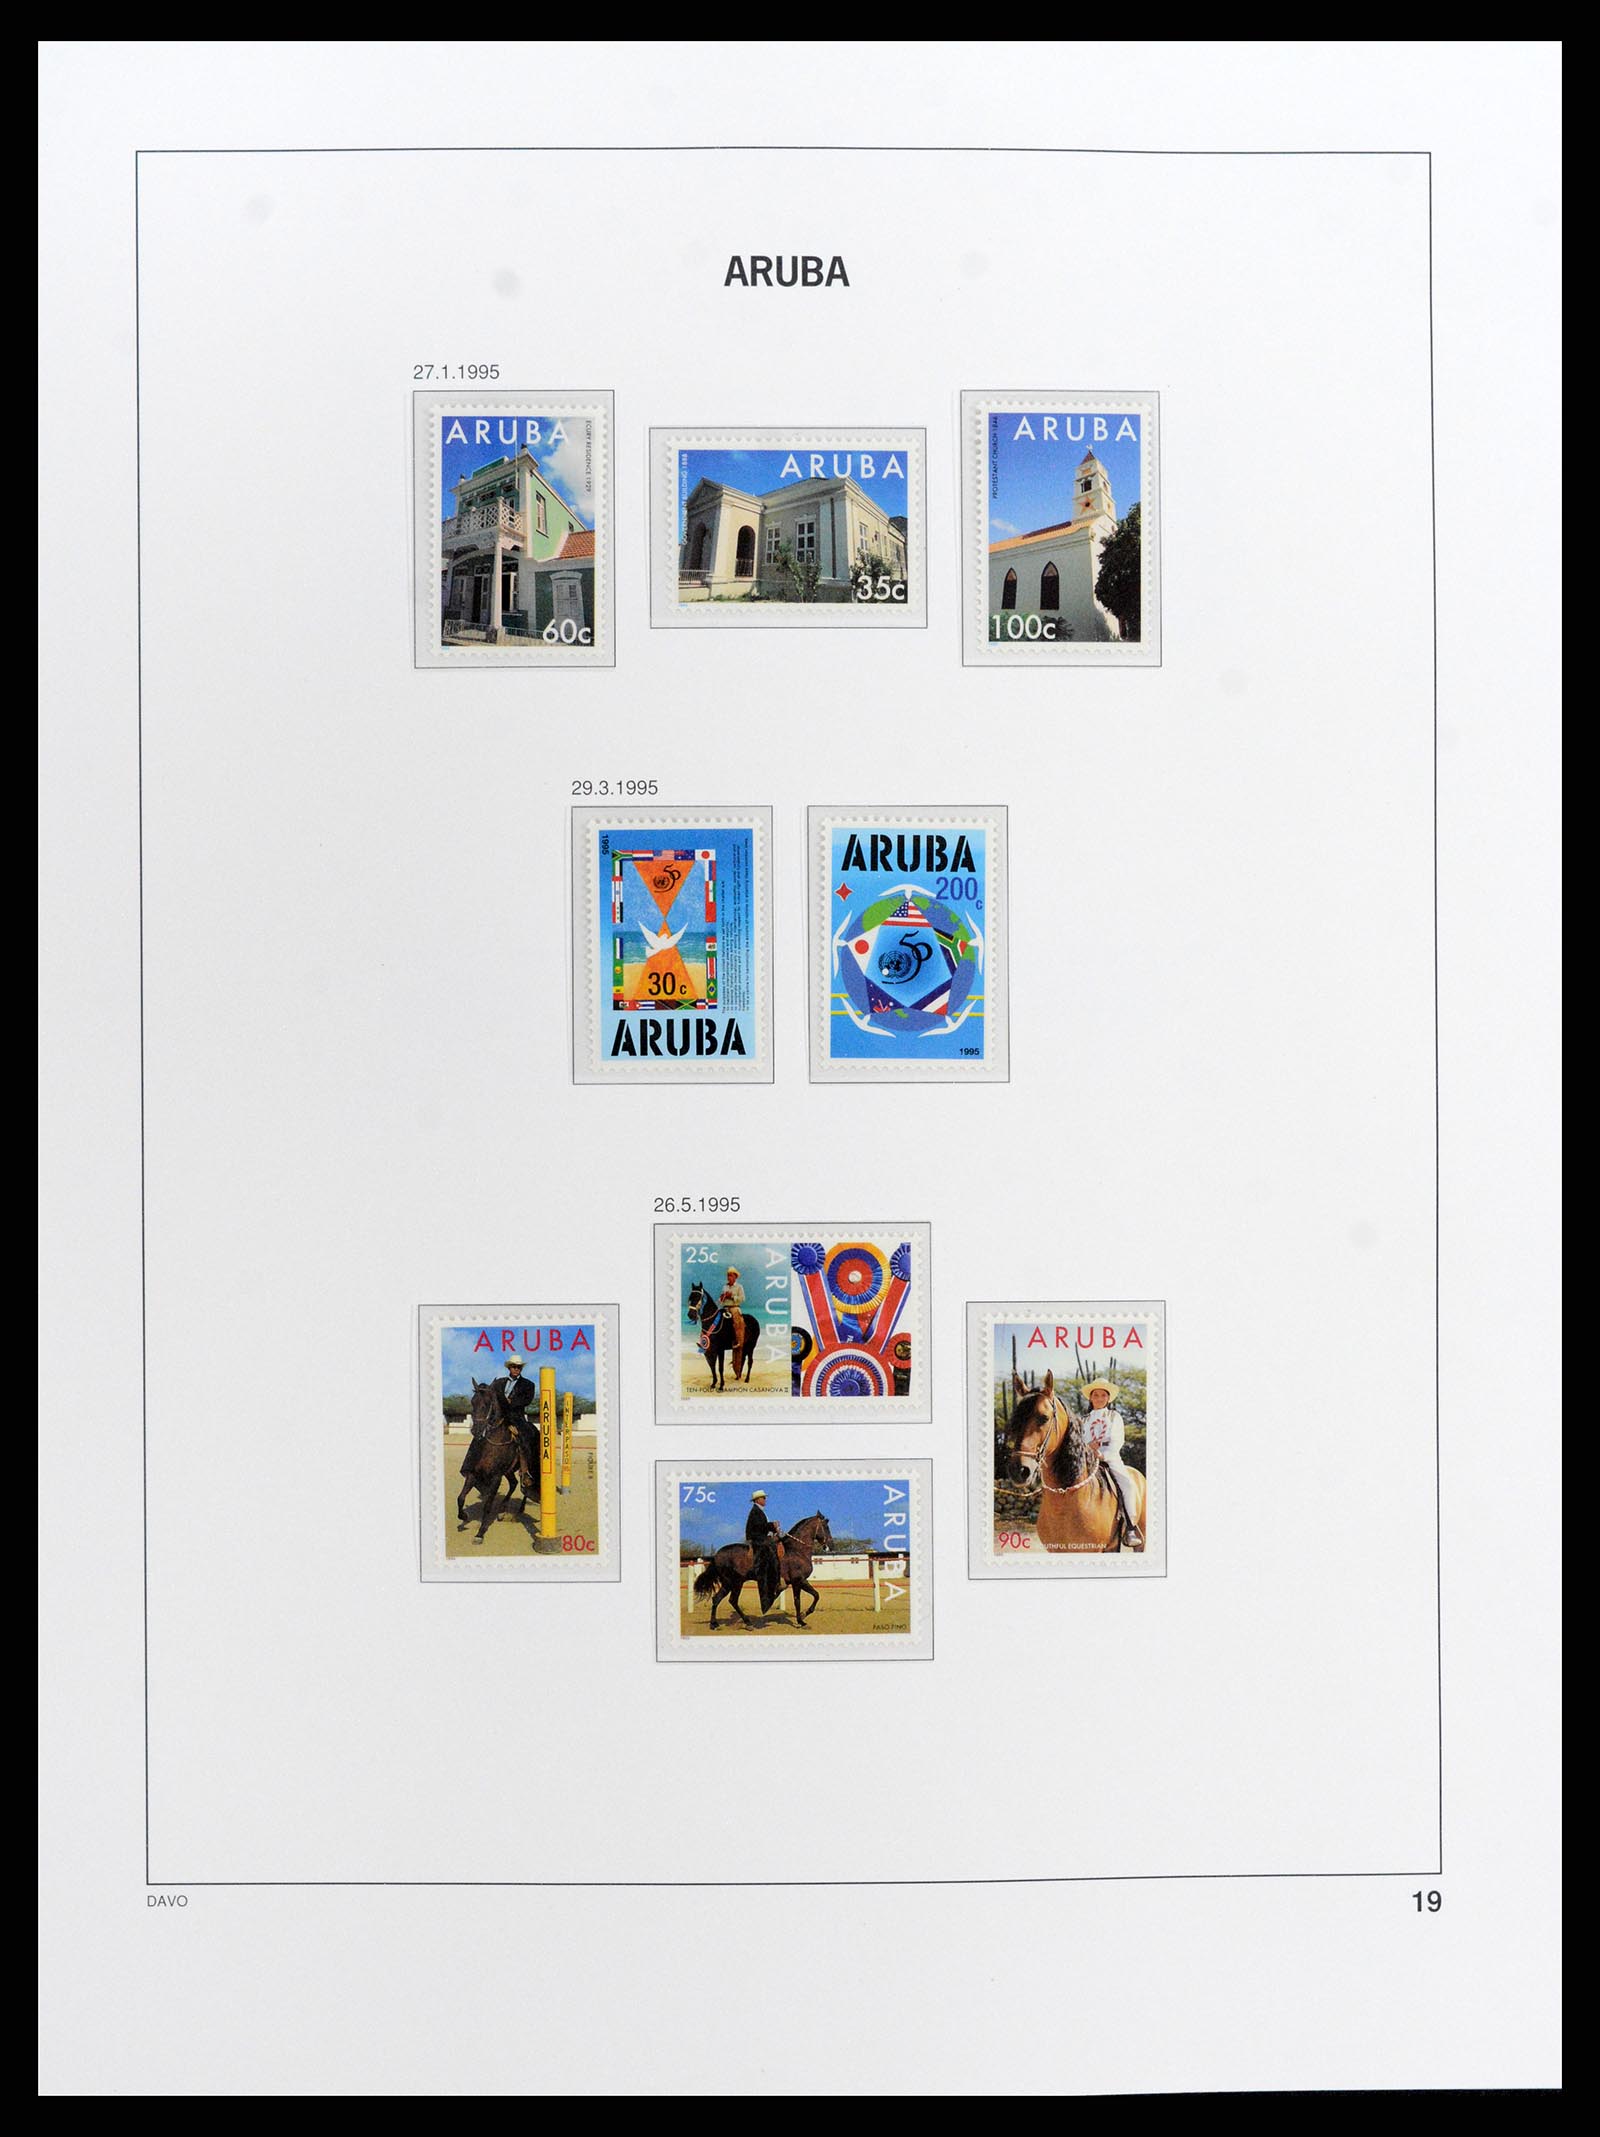 37841 019 - Stamp Collection 37841 Aruba 1986-2011.